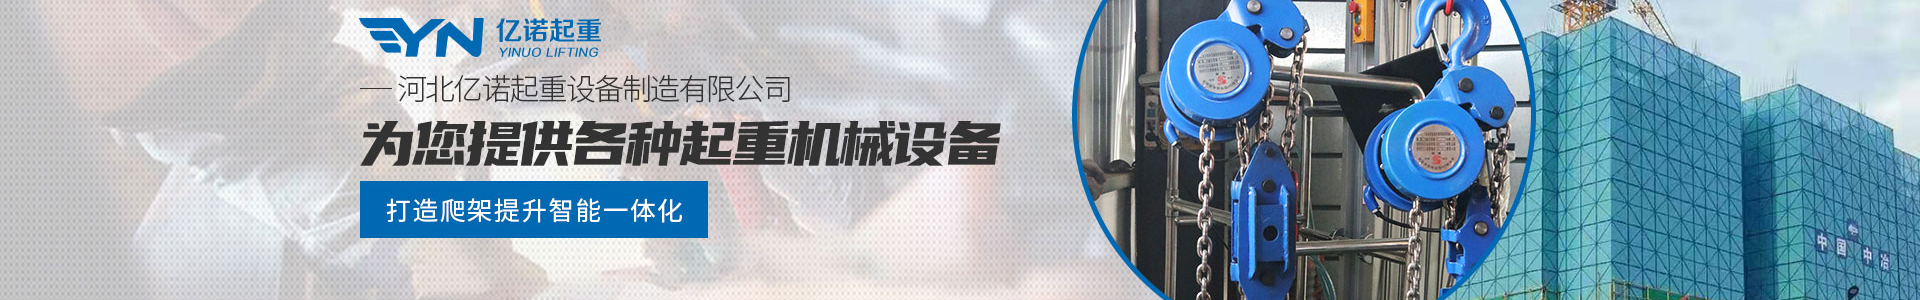 焊罐群吊电动葫芦_产品展示_亿诺起重有限公司